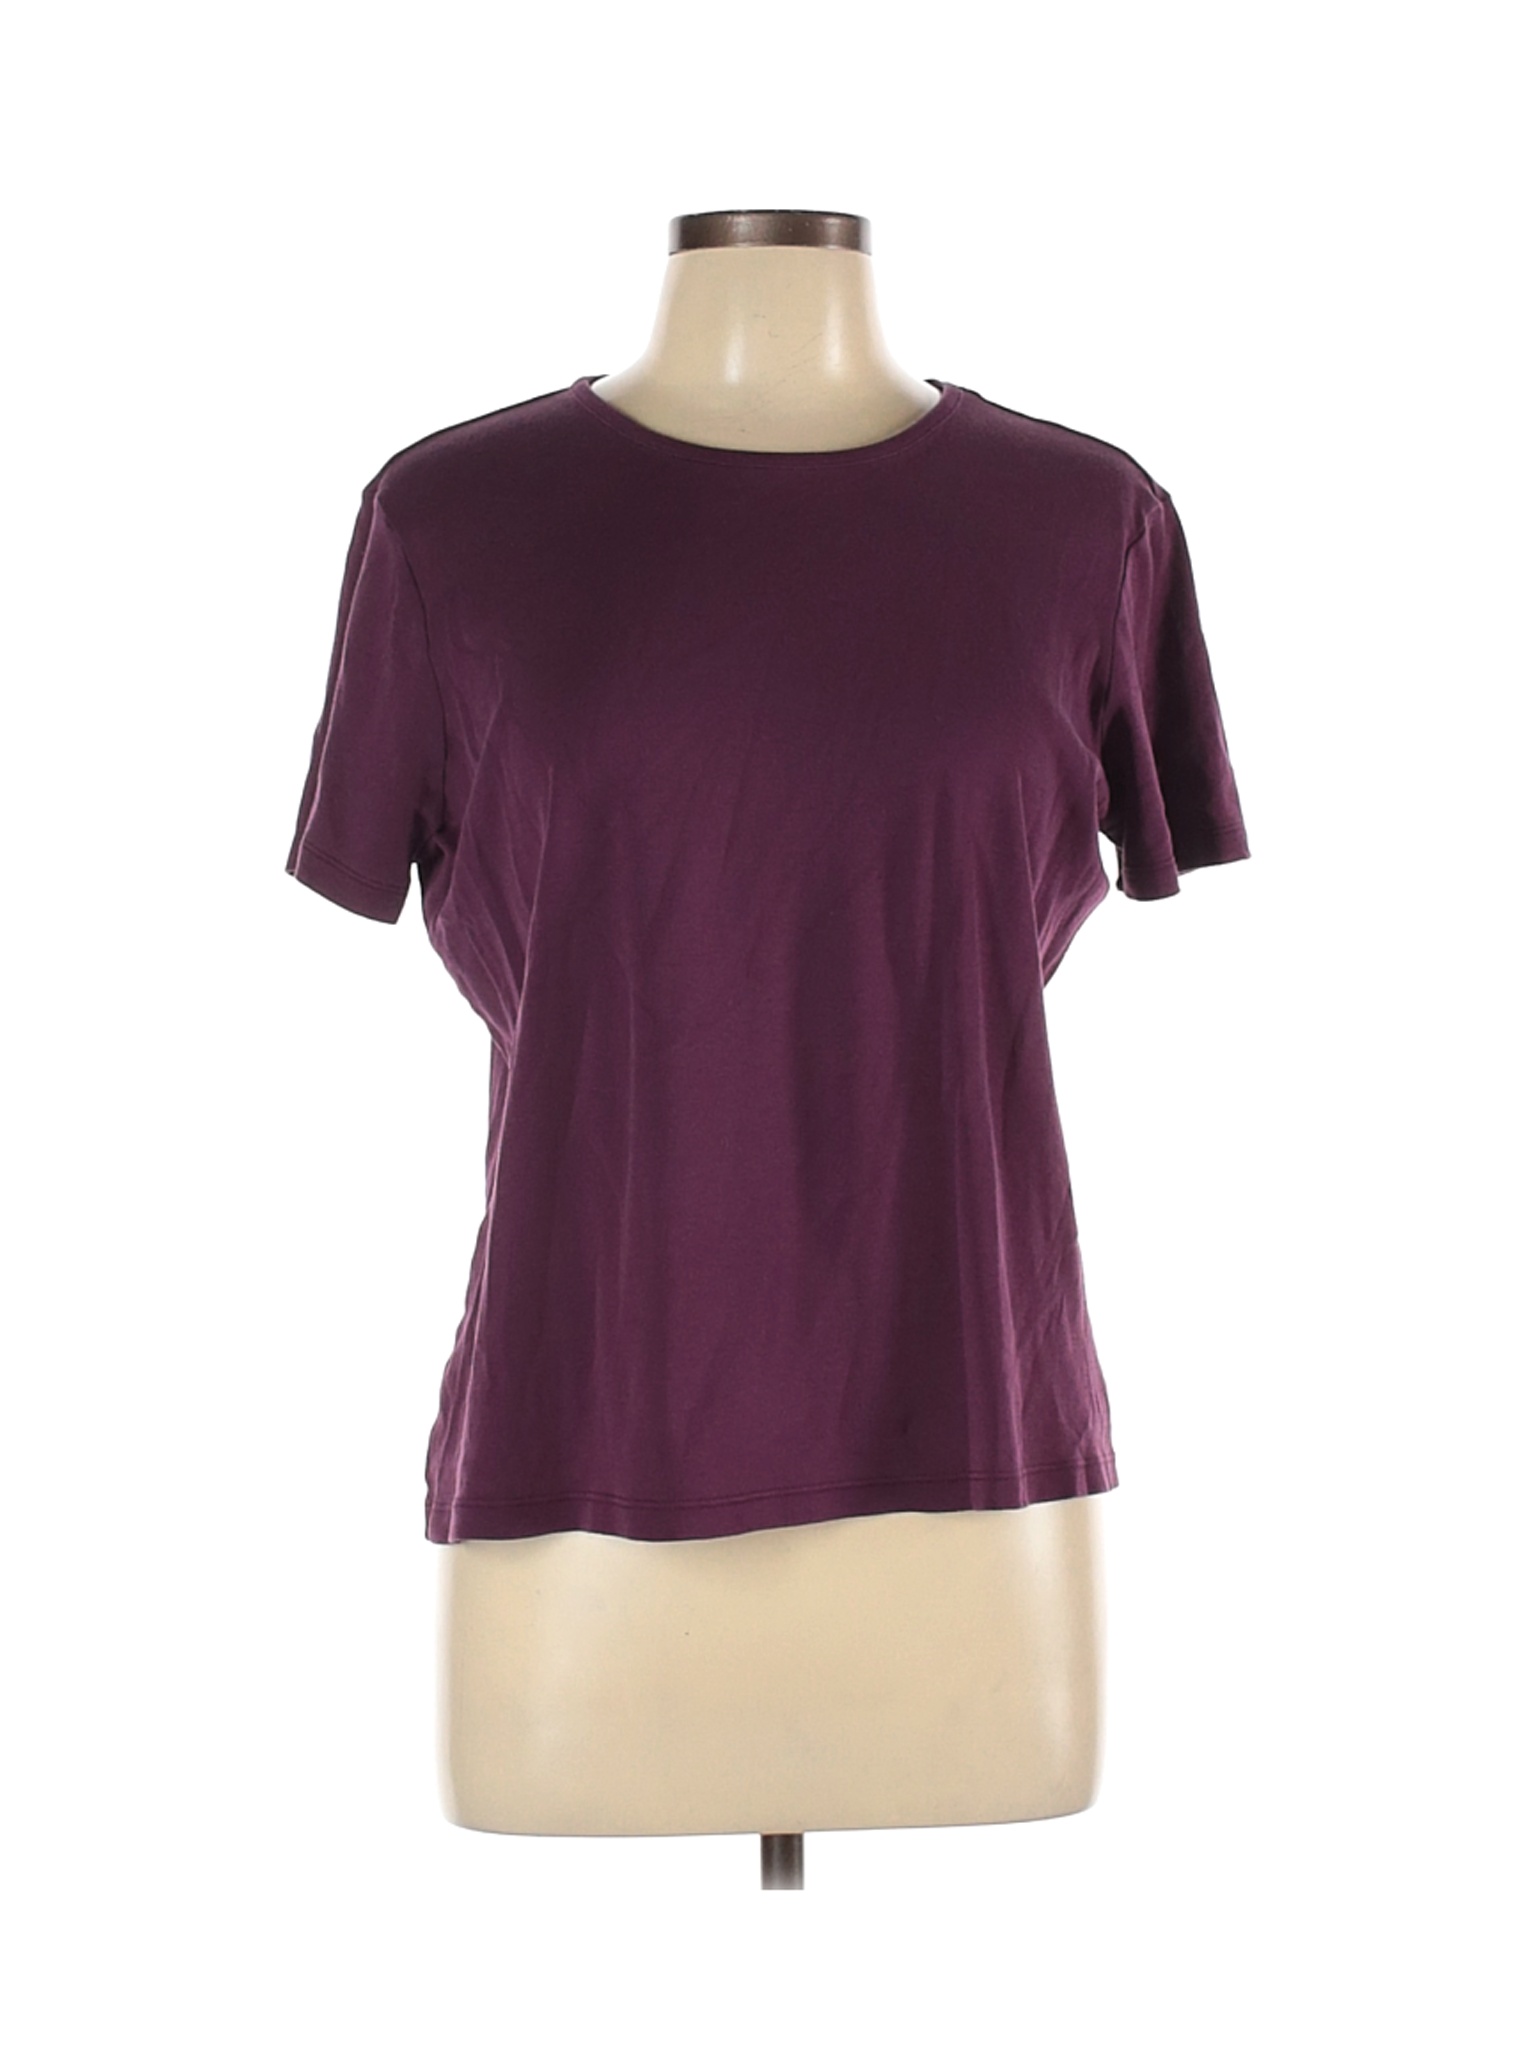 L.L.Bean Women Purple Short Sleeve T-Shirt L | eBay